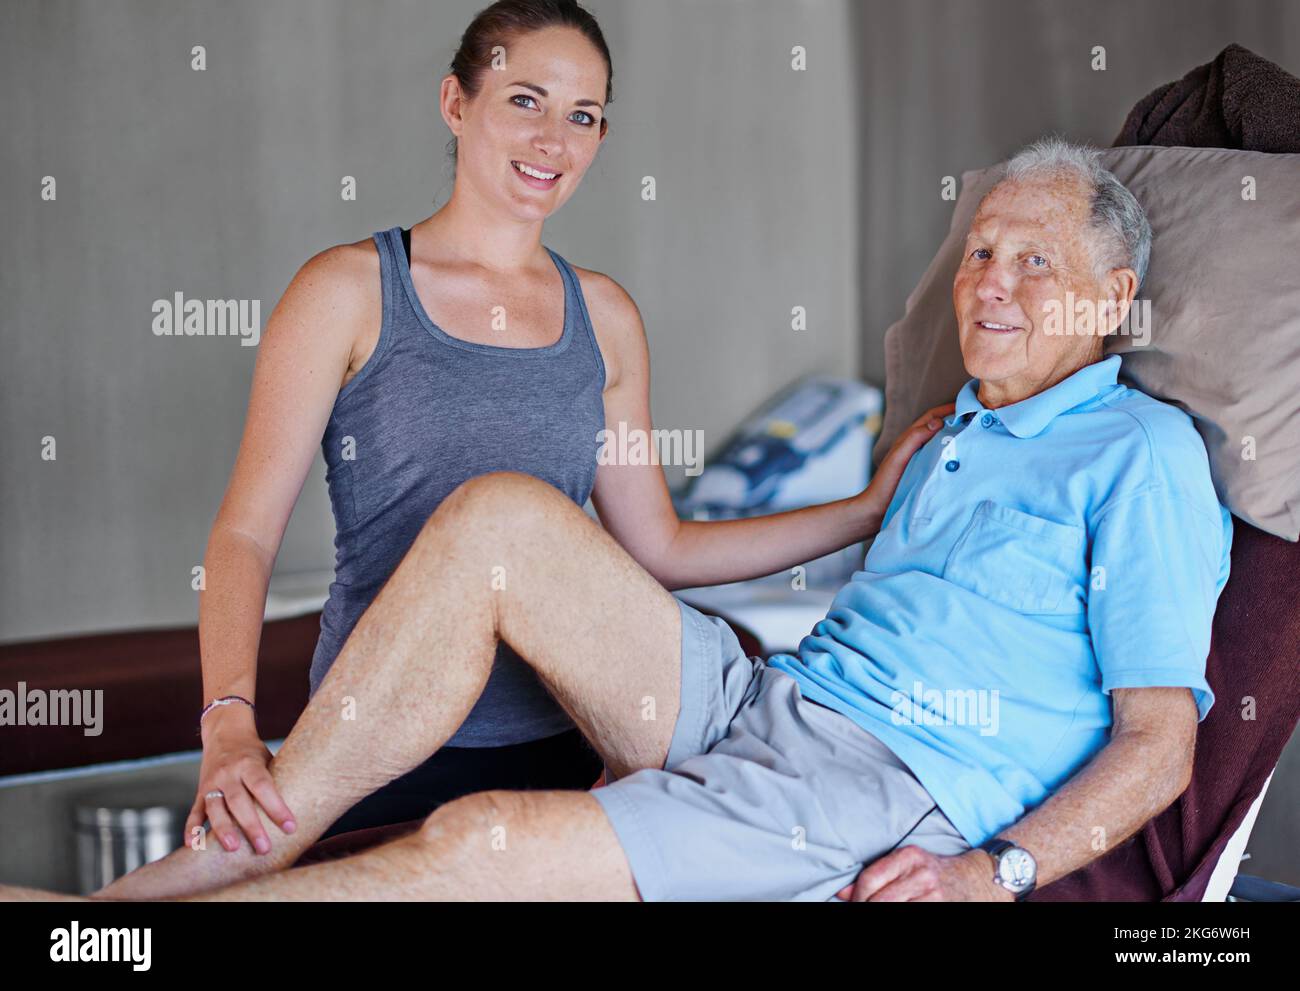 Meine Patienten wieder auf die Beine zu bringen. Porträt eines älteren Mannes, der eine Physiotherapie mit einer Therapeutin gemacht hat. Stockfoto